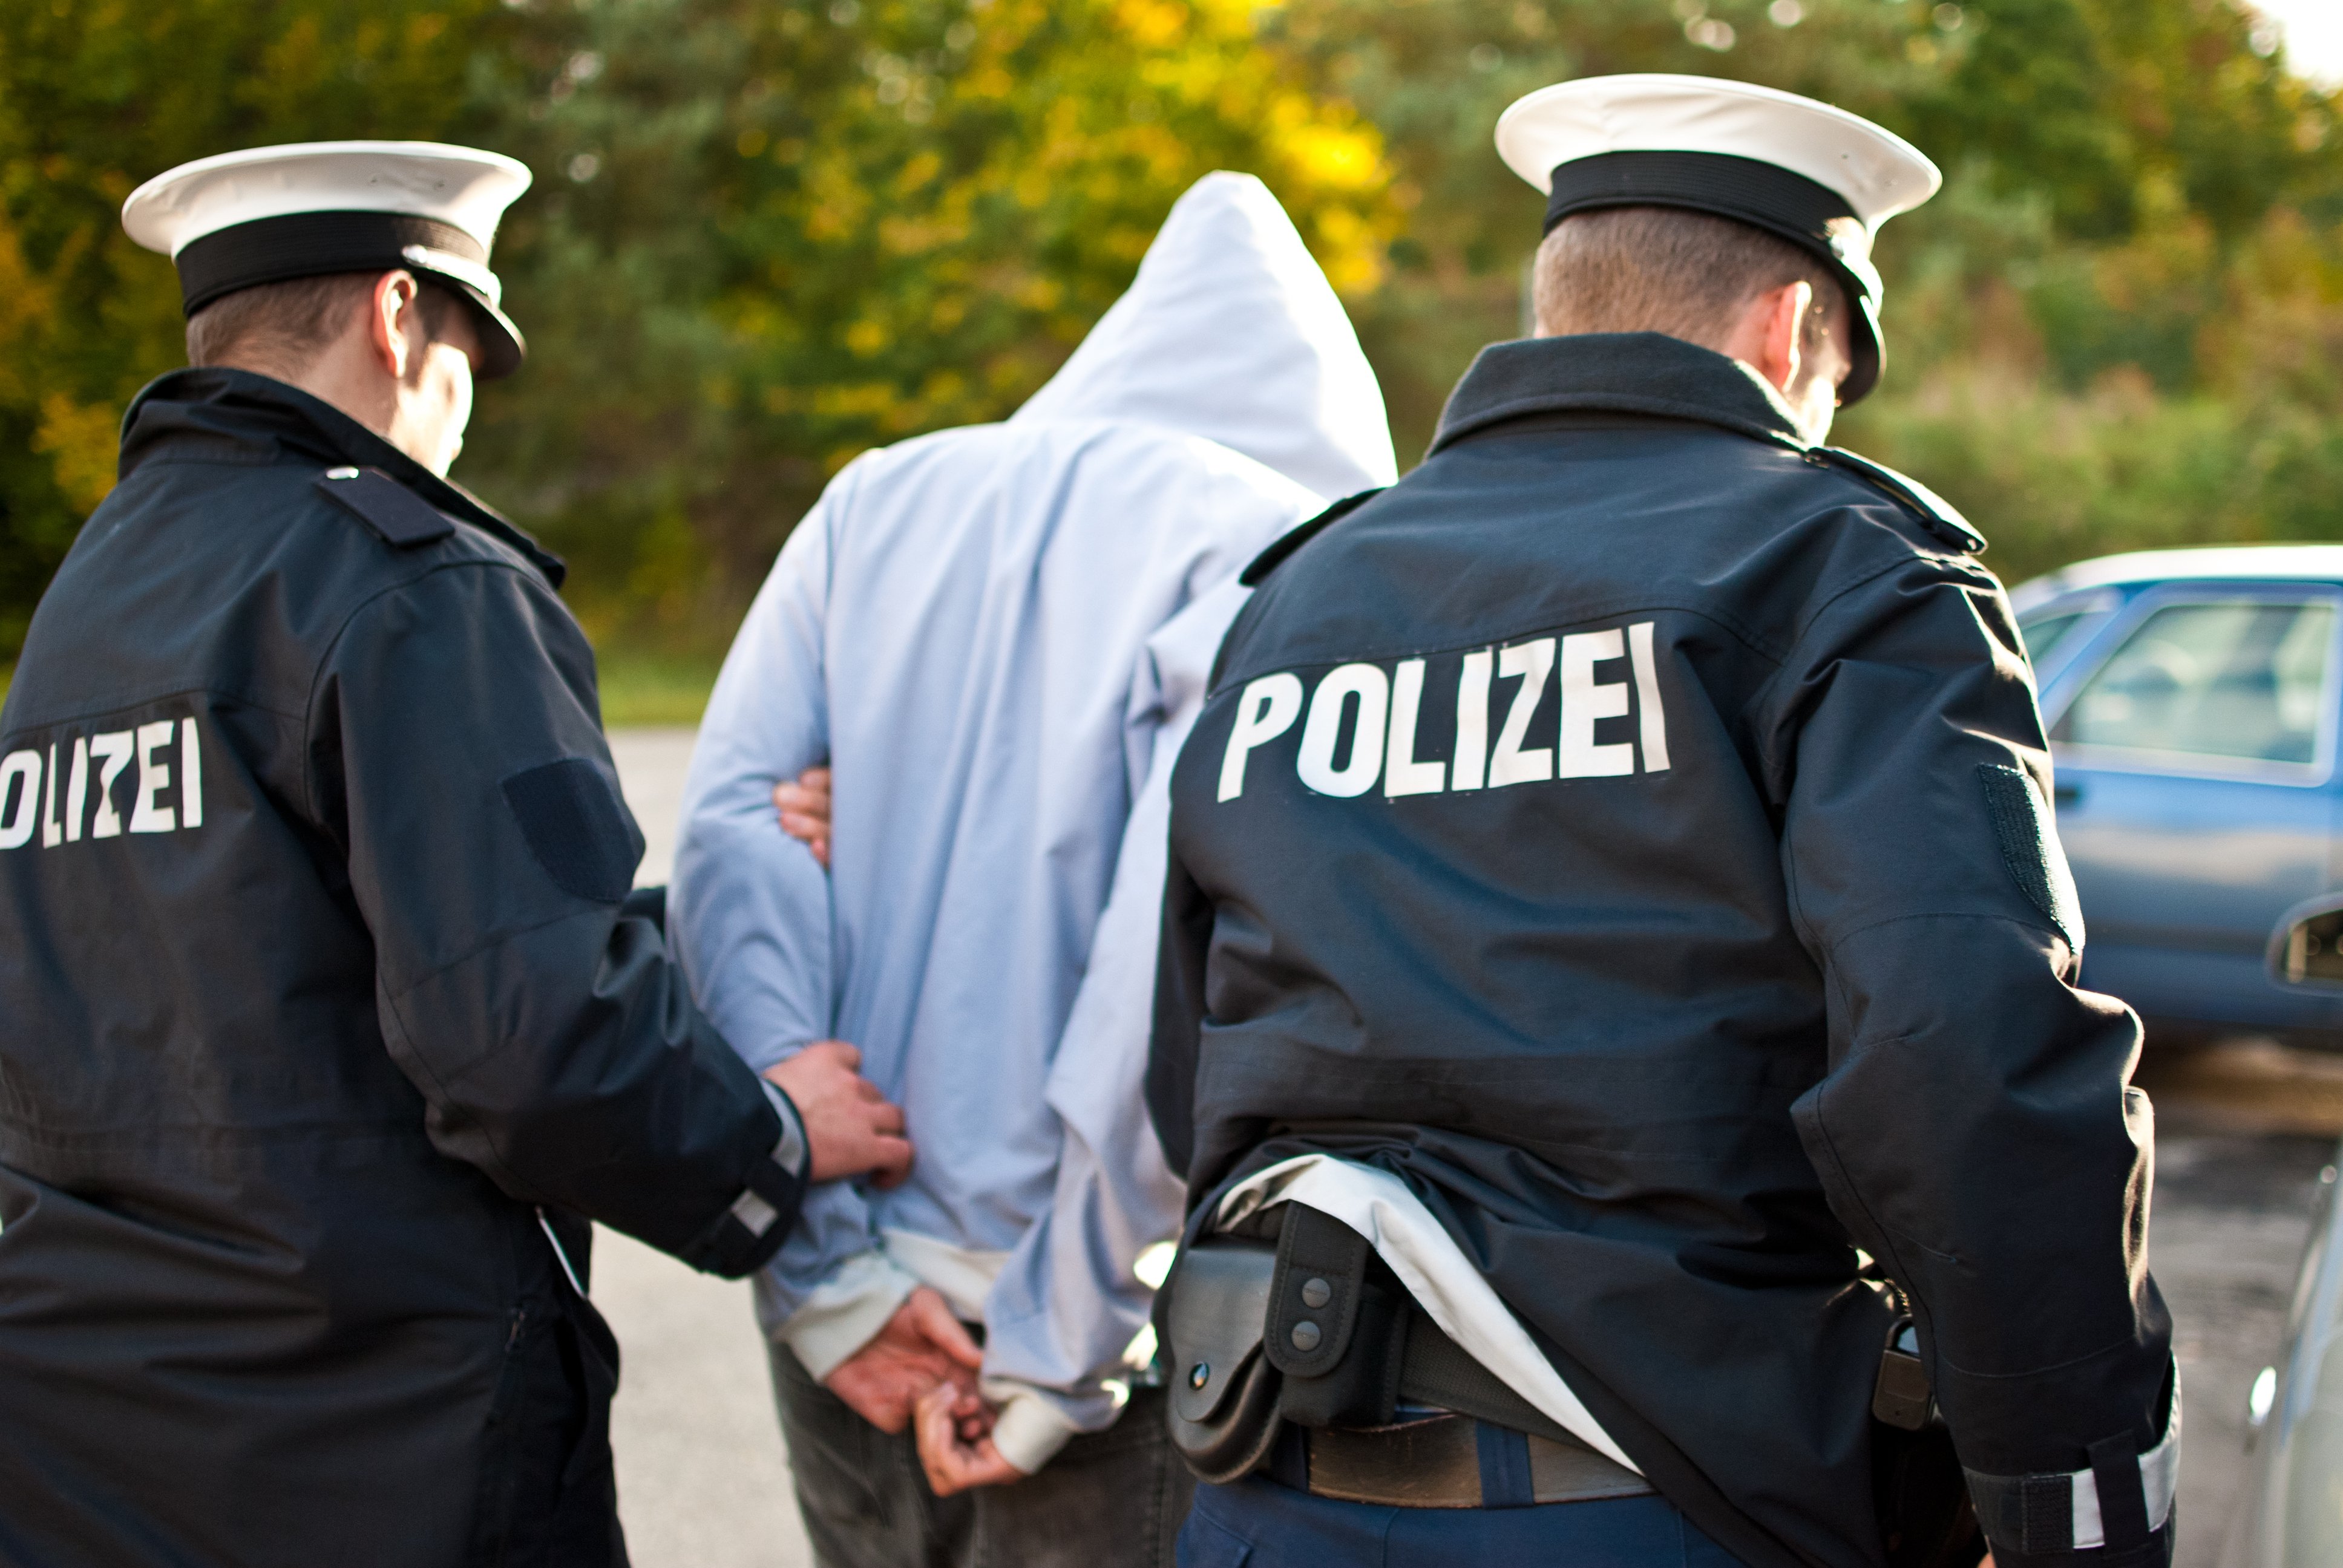 Polizisten nehmen einen Kriminellen fest | Quelle: Shutterstock